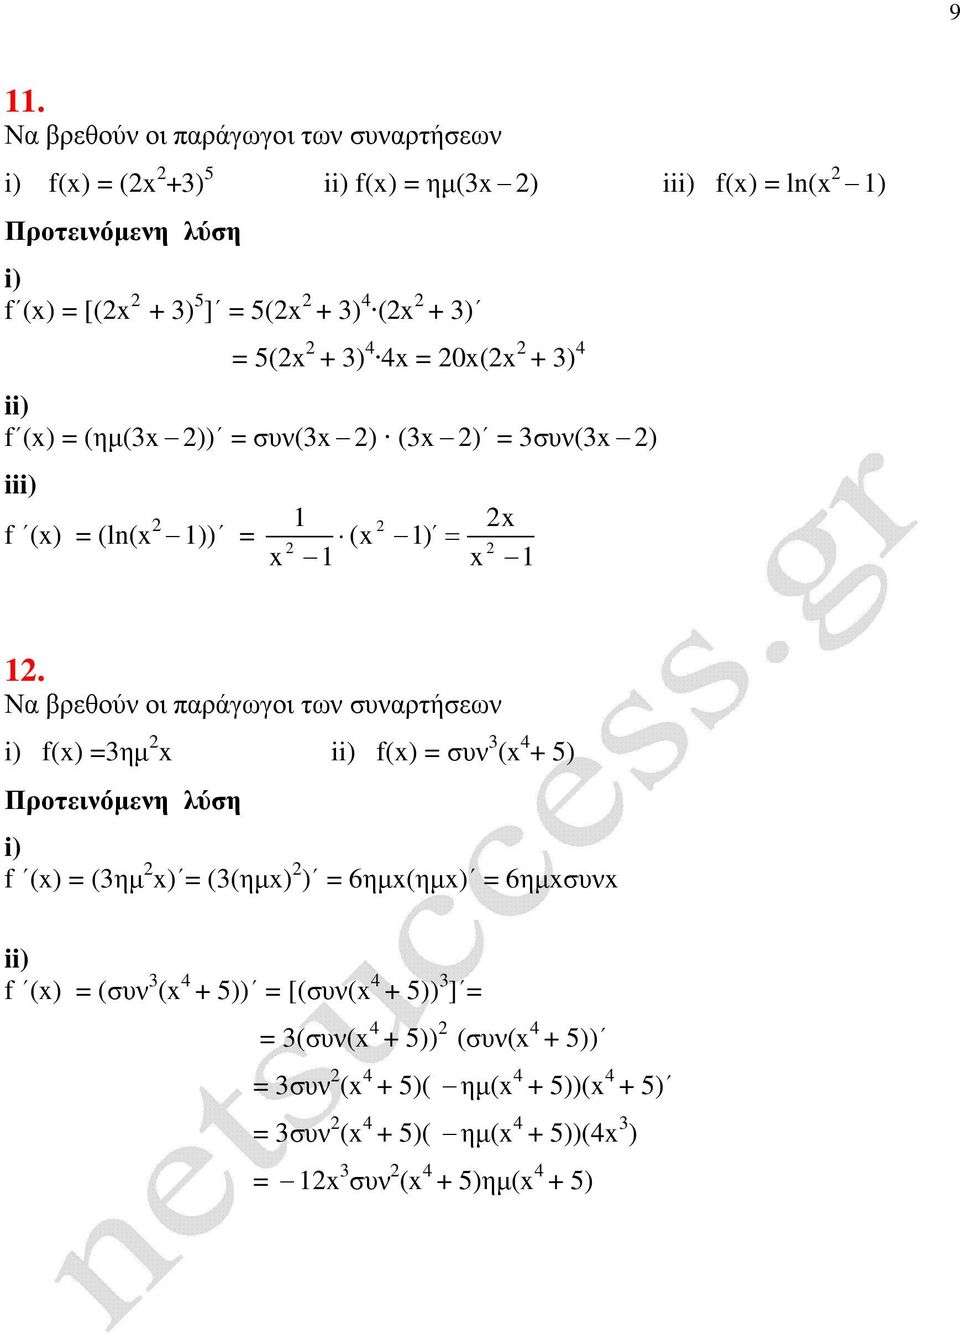 Να βρεθούν οι παράγωγοι των συναρτήσεων () ηµ () συν ( 4 + 5) () (ηµ ) ((ηµ) ) 6ηµ(ηµ) 6ηµσυν () (συν